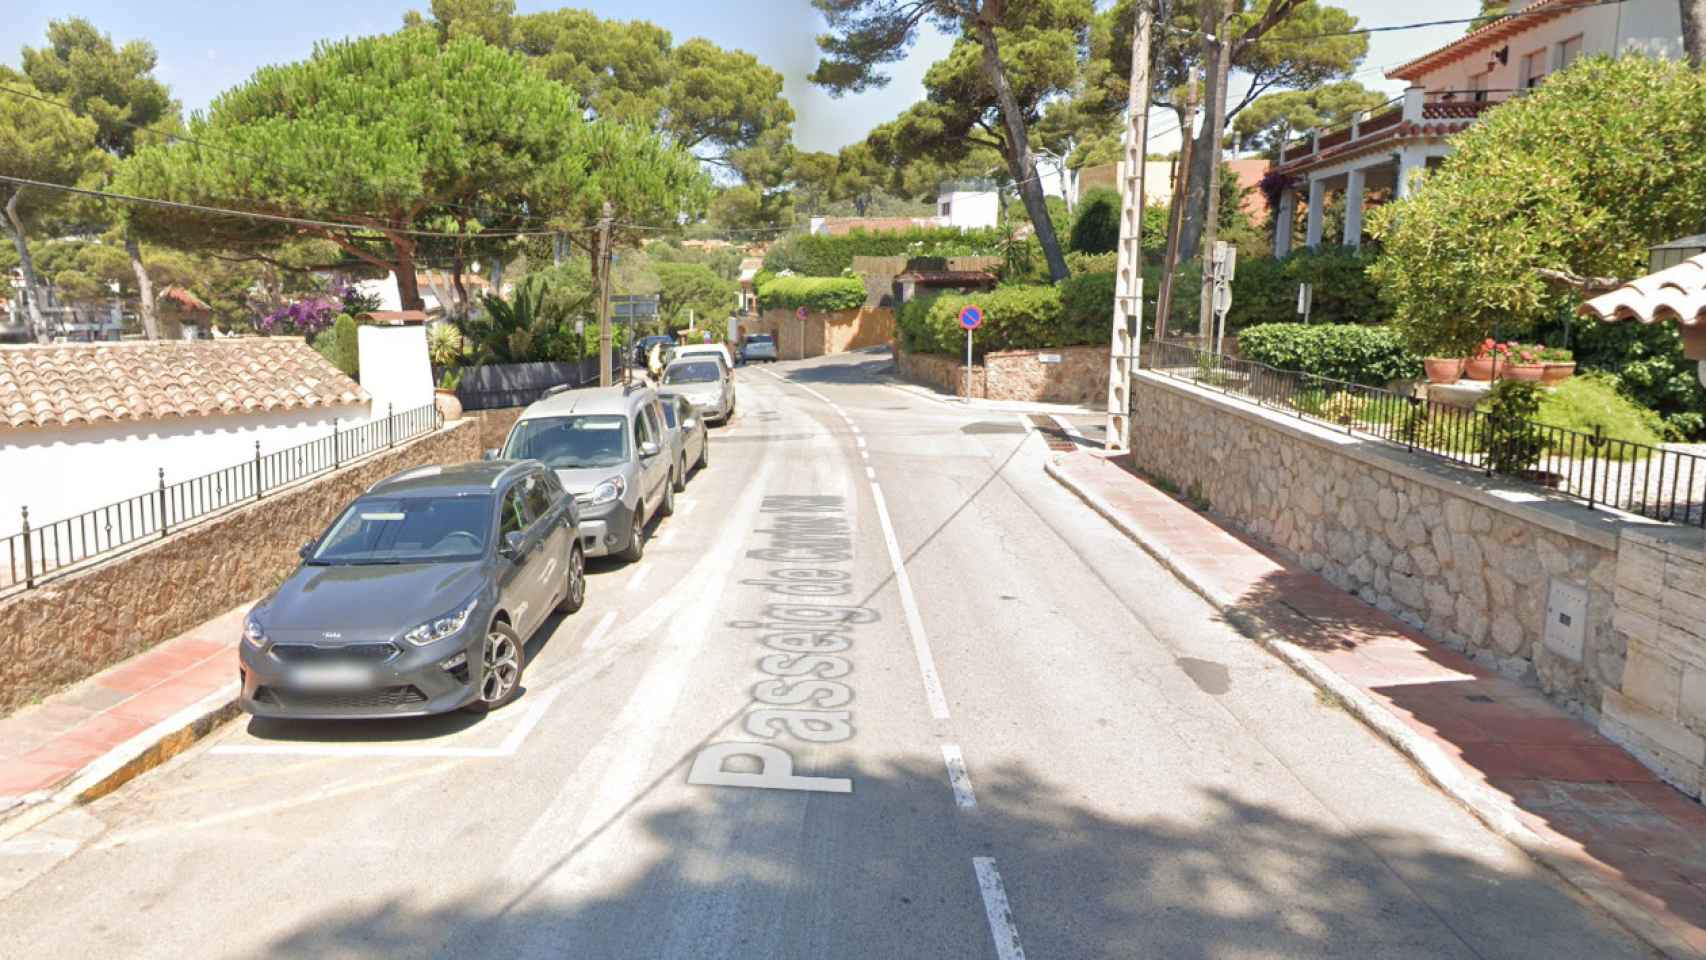 Paseo de Carles Vila, de Llafranc (Girona), donde se ha producido el robo de diversos vehículos por los que hay seis detenidos / GOOGLE STREET VIEW